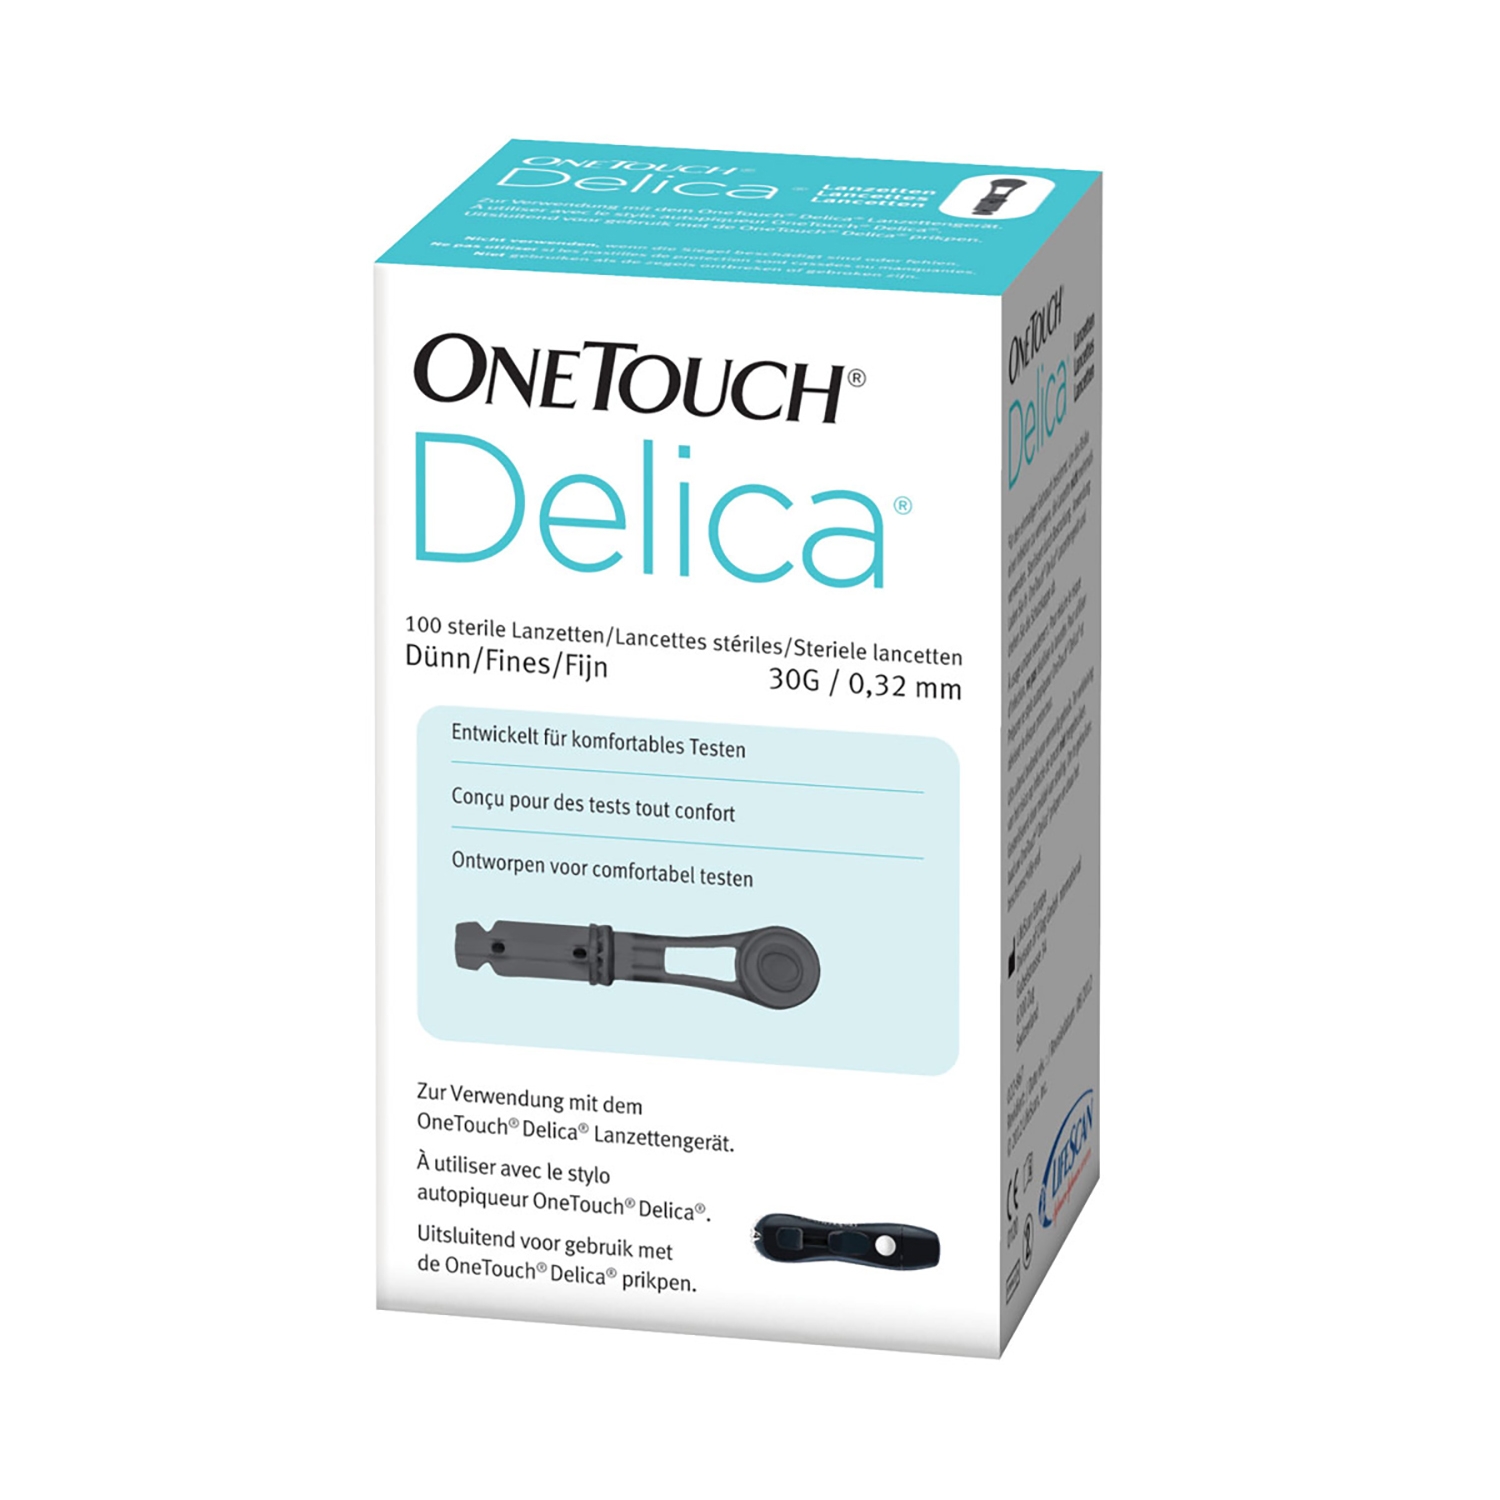 One touch delica lancettes (100 pcs)